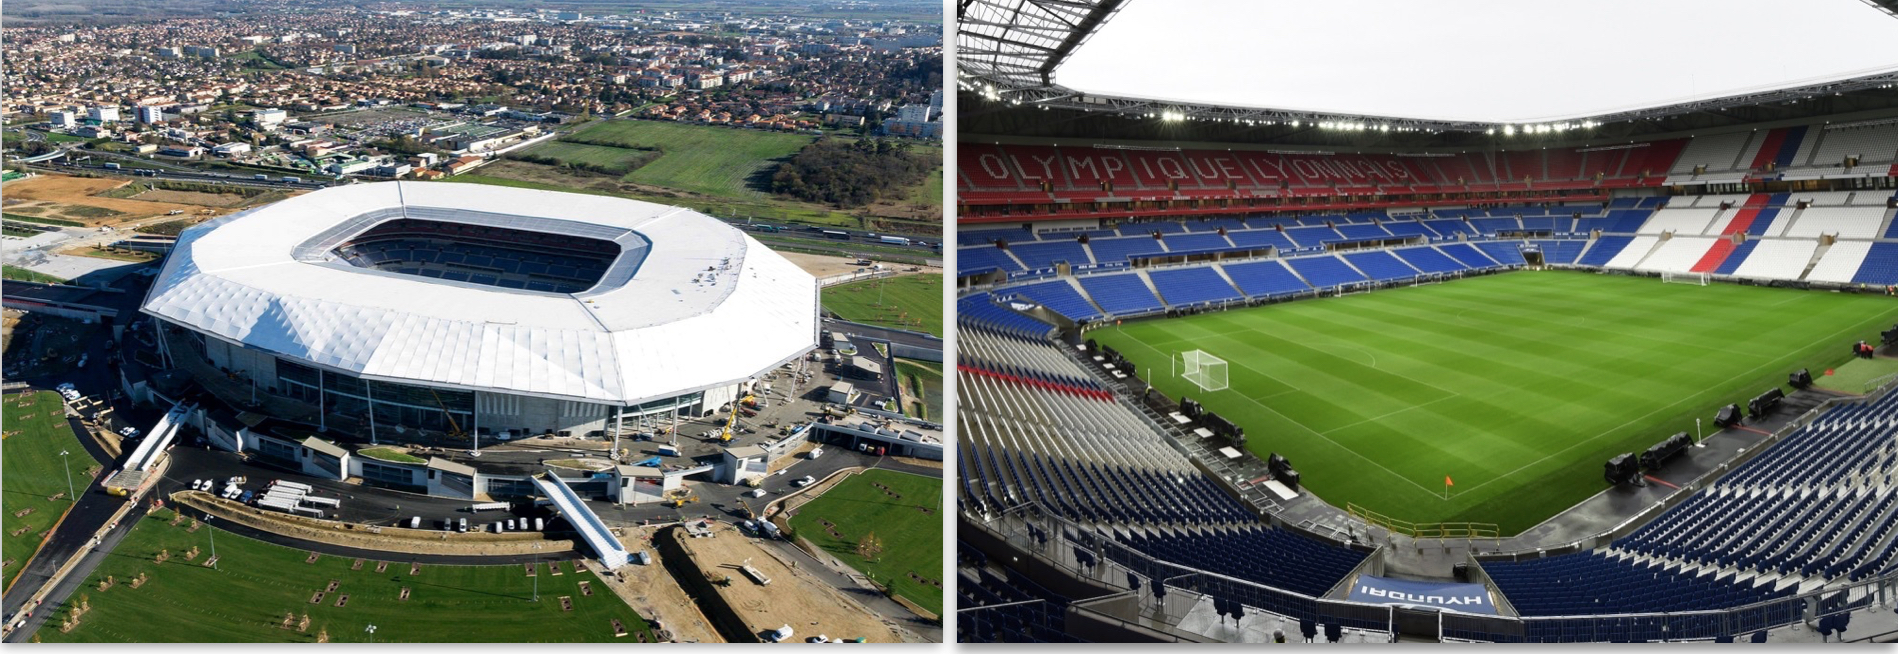 Der Parc Olympique Lyonnais, auch bekannt als Stade de Lumières, ist in Décines-Charpieu, einer östlich gelegenen Nachbargemeinde der Stadt Lyon Anfang 2016 eröffnet worden.